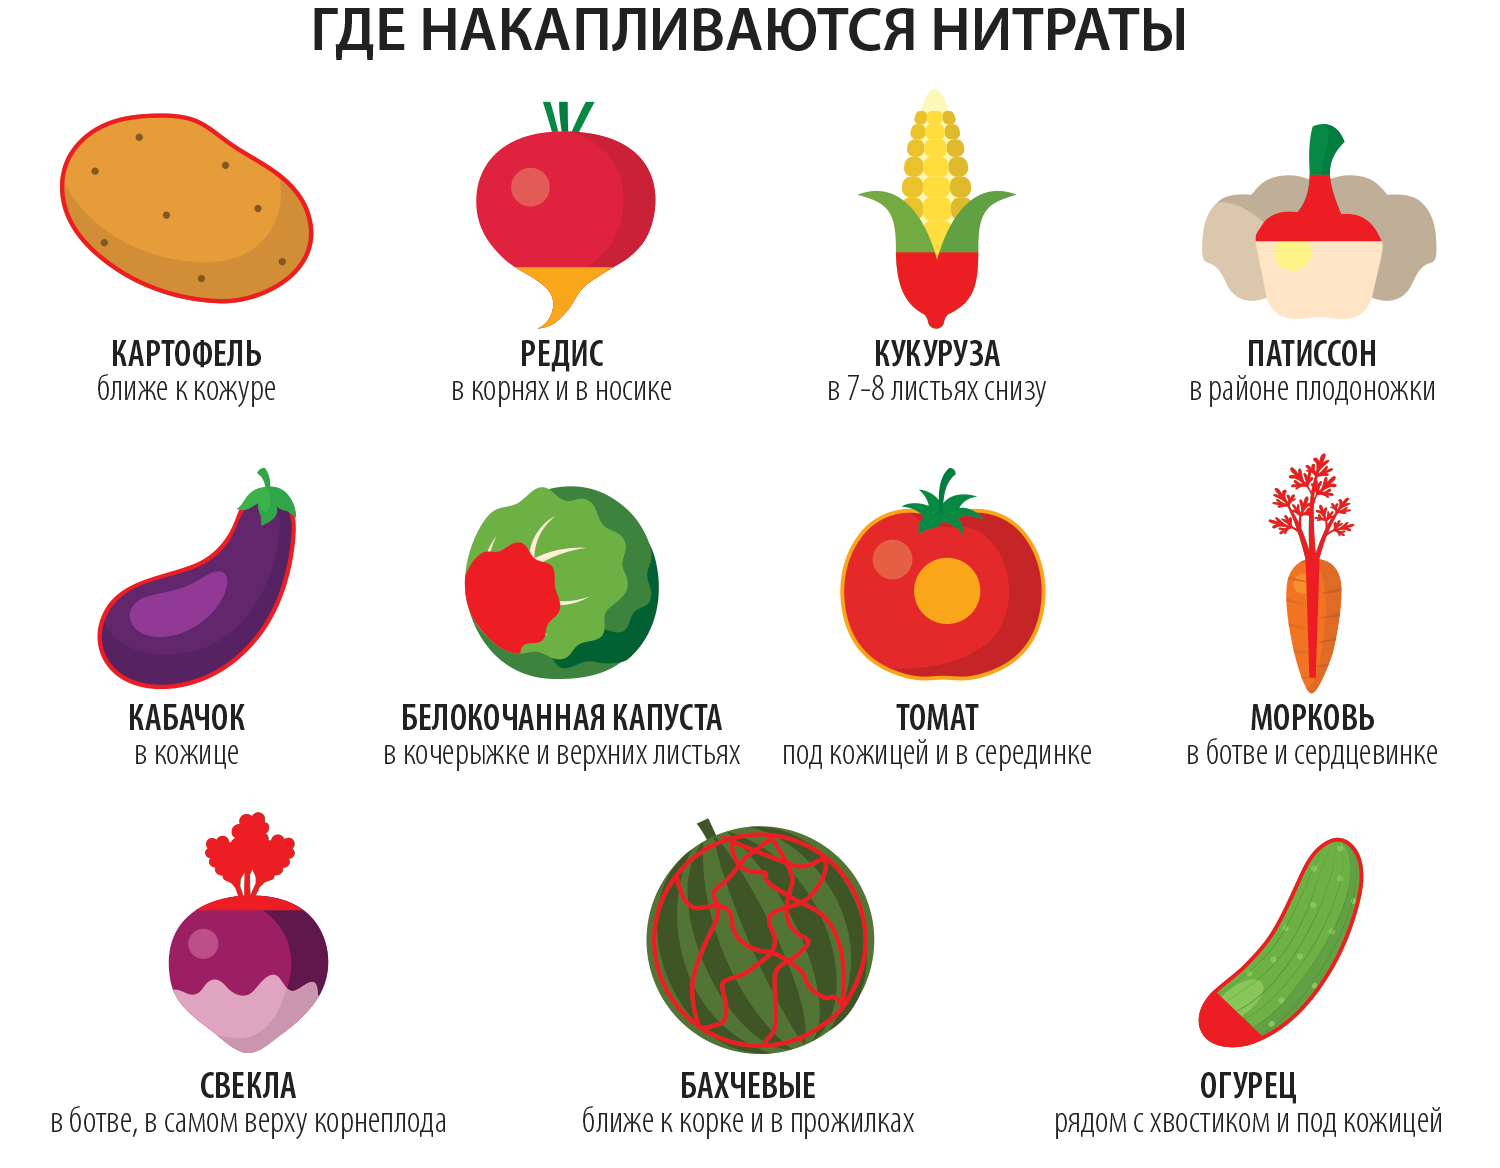 Нажми на фрукты в определенном. Нитраты в овощах. Нитриты в овощах и фруктах. Нитраты во фруктах. Нитраты и нитриты в овощах и фруктах.